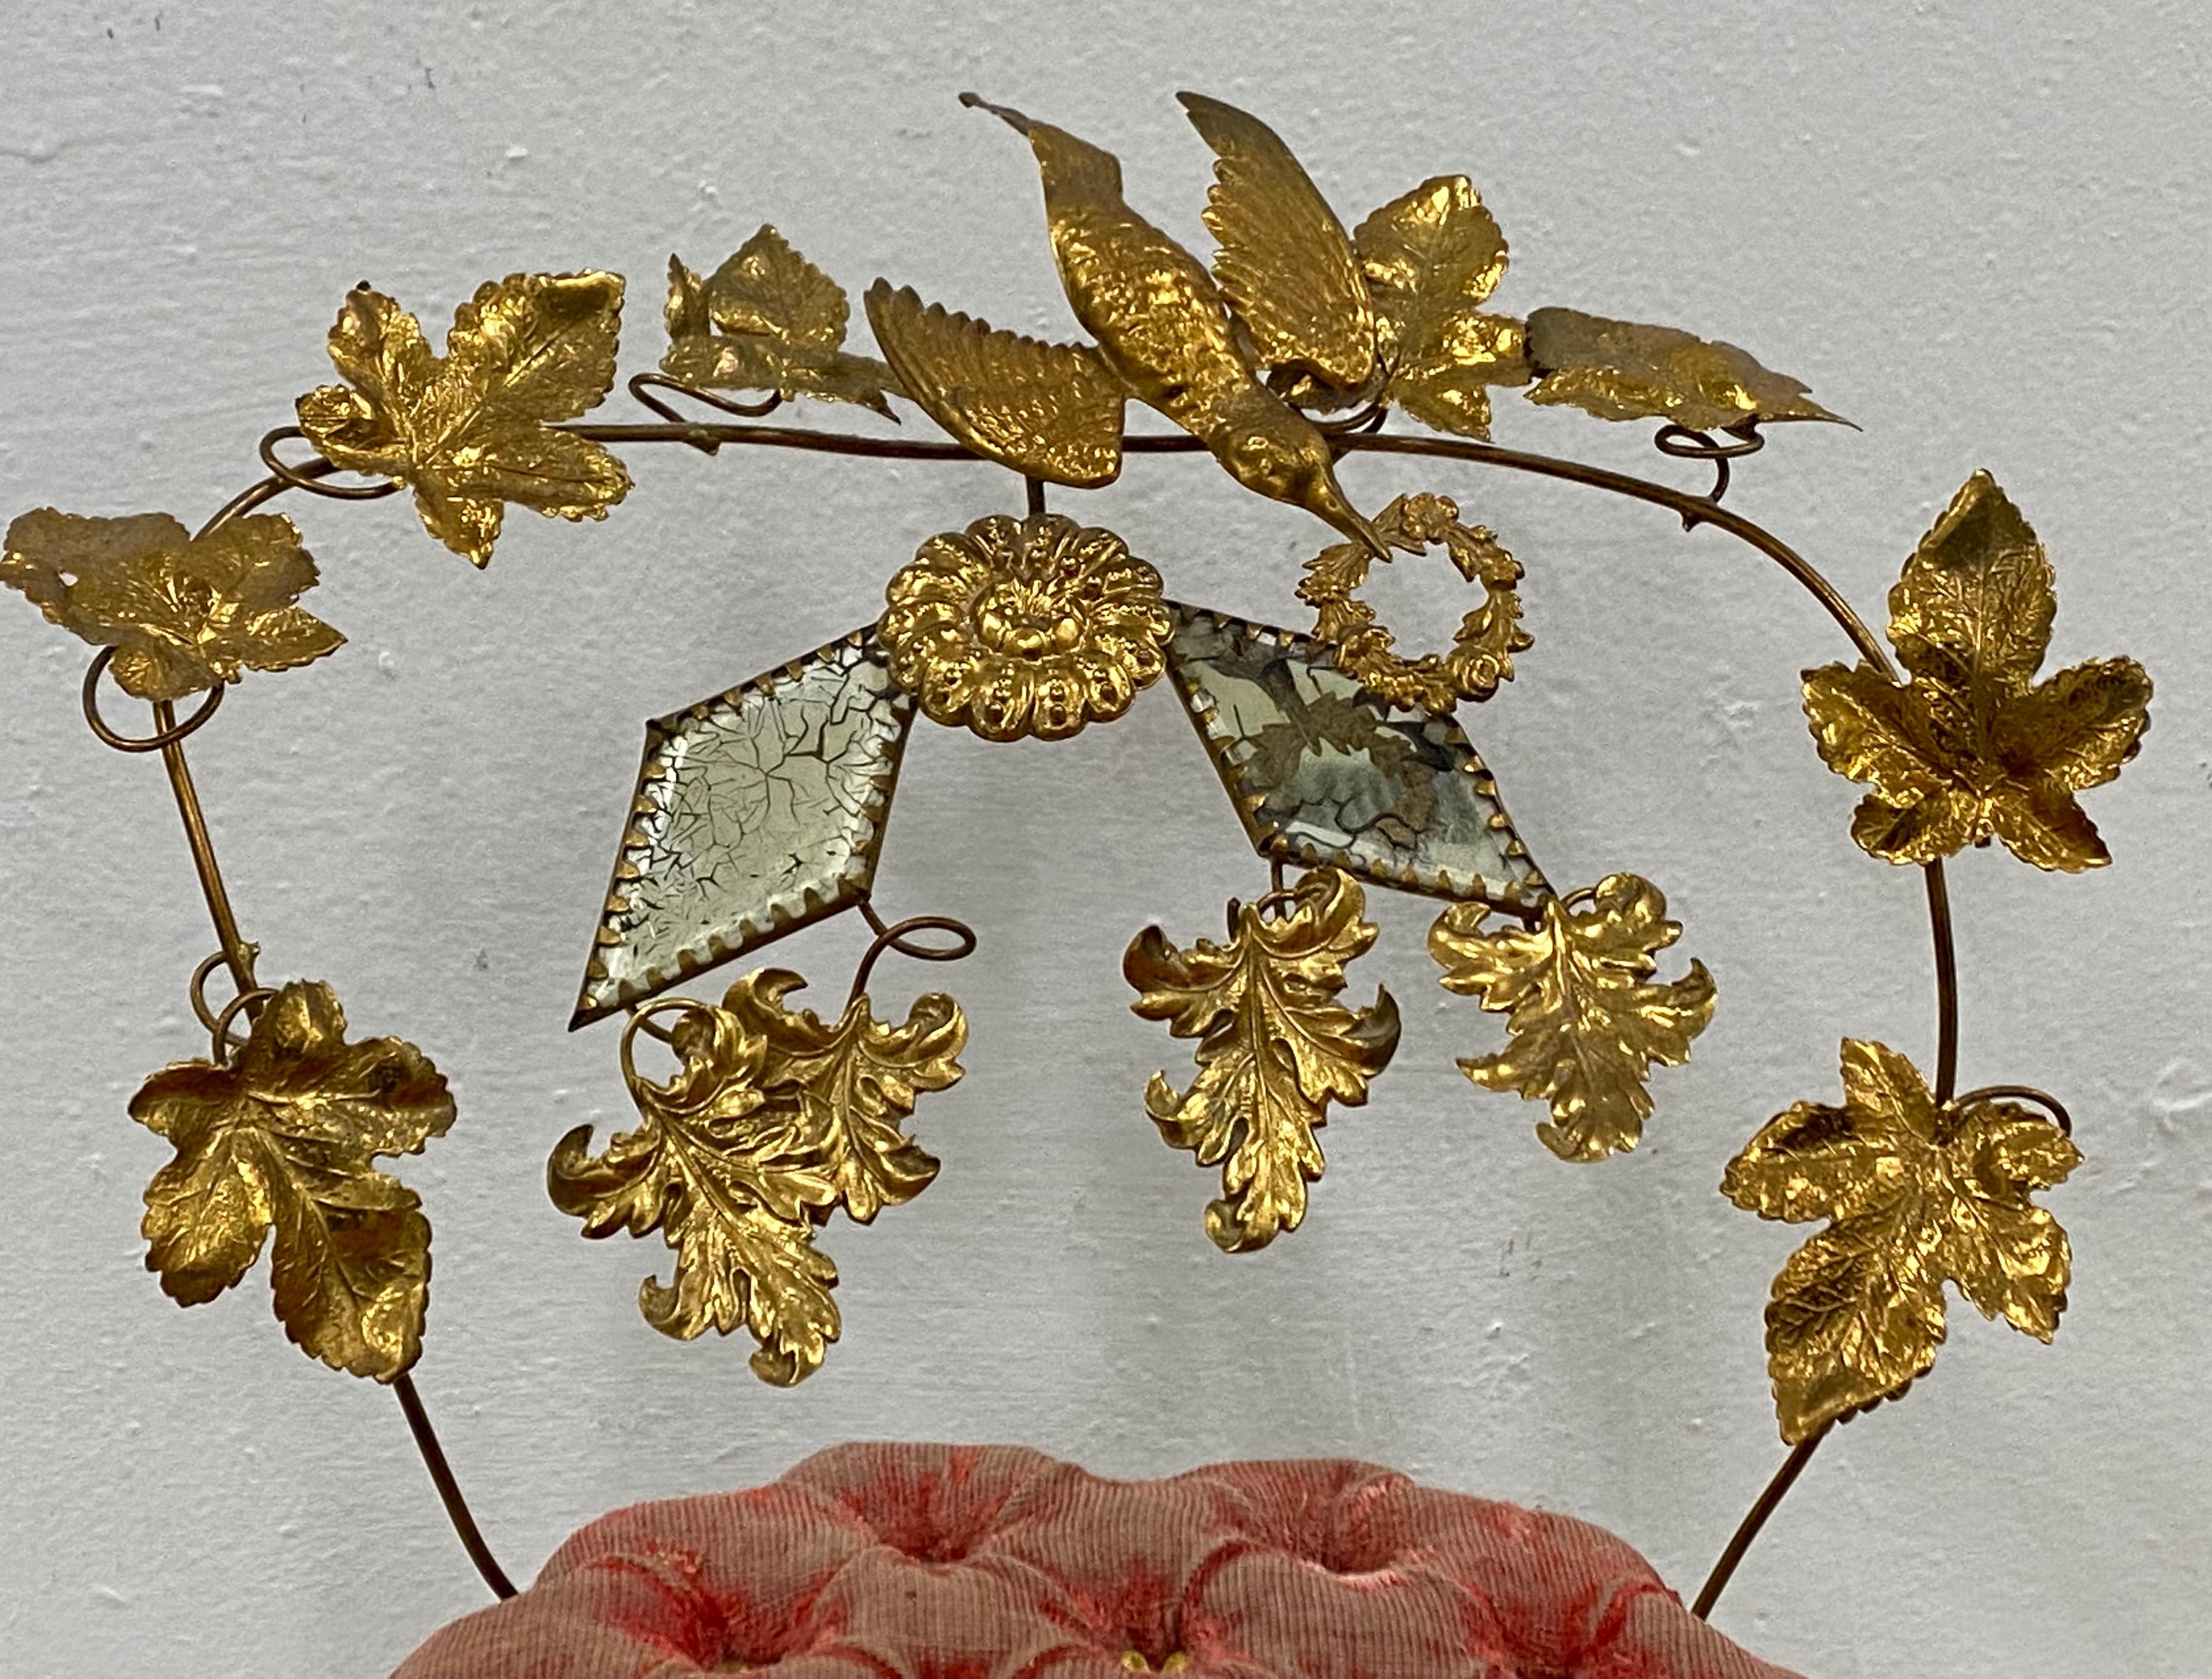 Vergoldetes Metall-Hochzeitskissen aus der viktorianischen Zeit, um 1900

Handgefertigtes Stuhlkissen aus gedrehtem und vergoldetem Blech

Hochzeitskissen waren in der viktorianischen Zeit sehr beliebt. Ein beliebtes Hochzeitsgeschenk für das